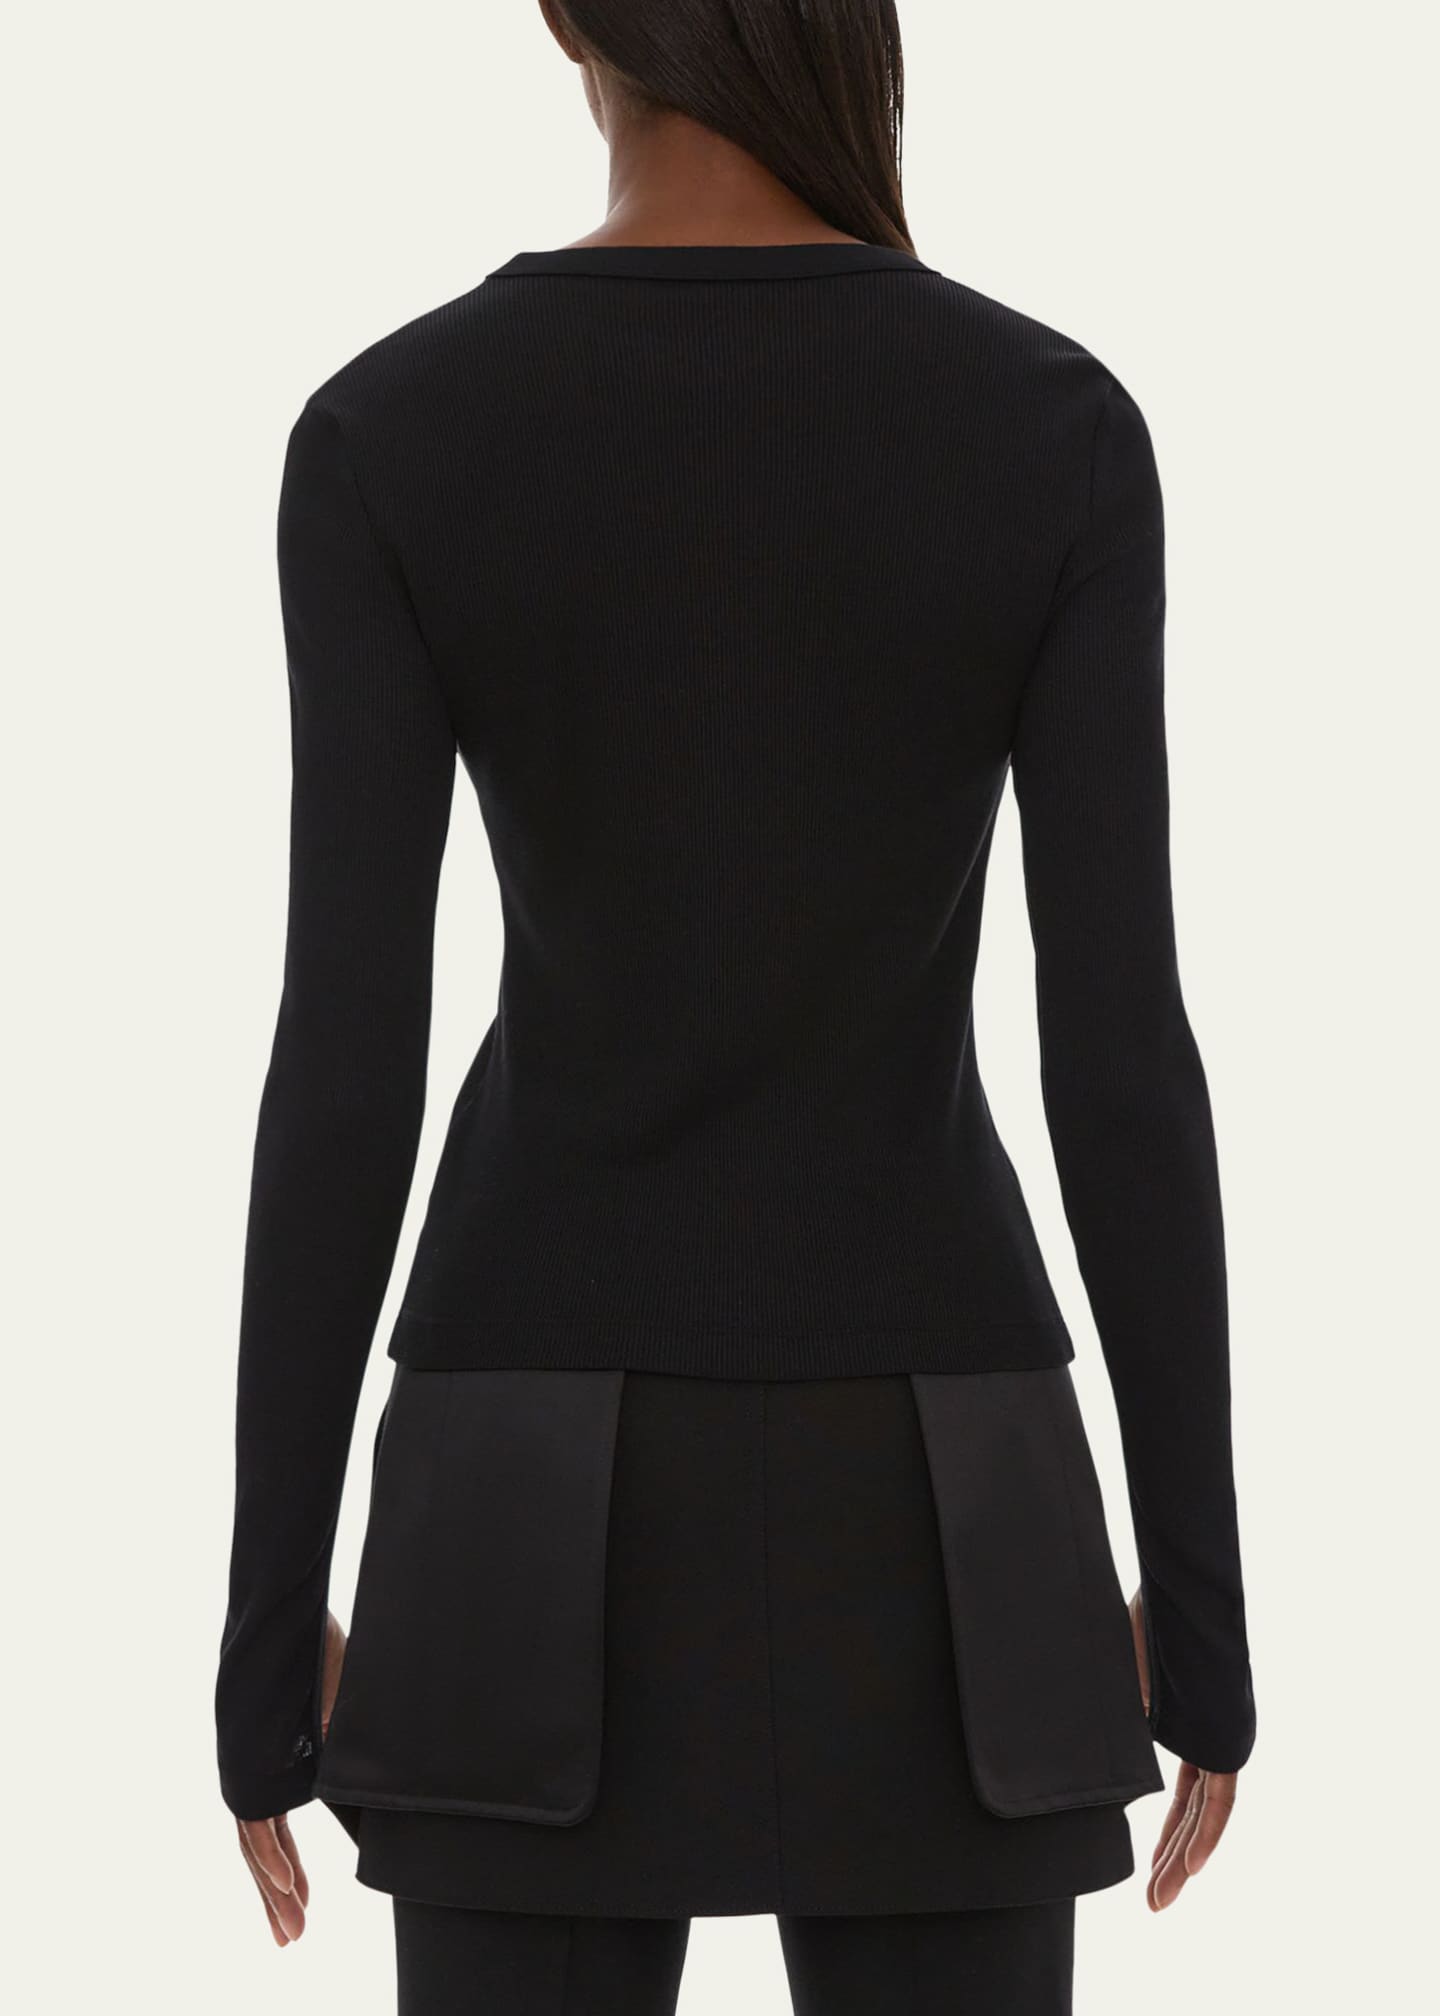 Helmut Lang black knit bra top in size XS/S in great - Depop